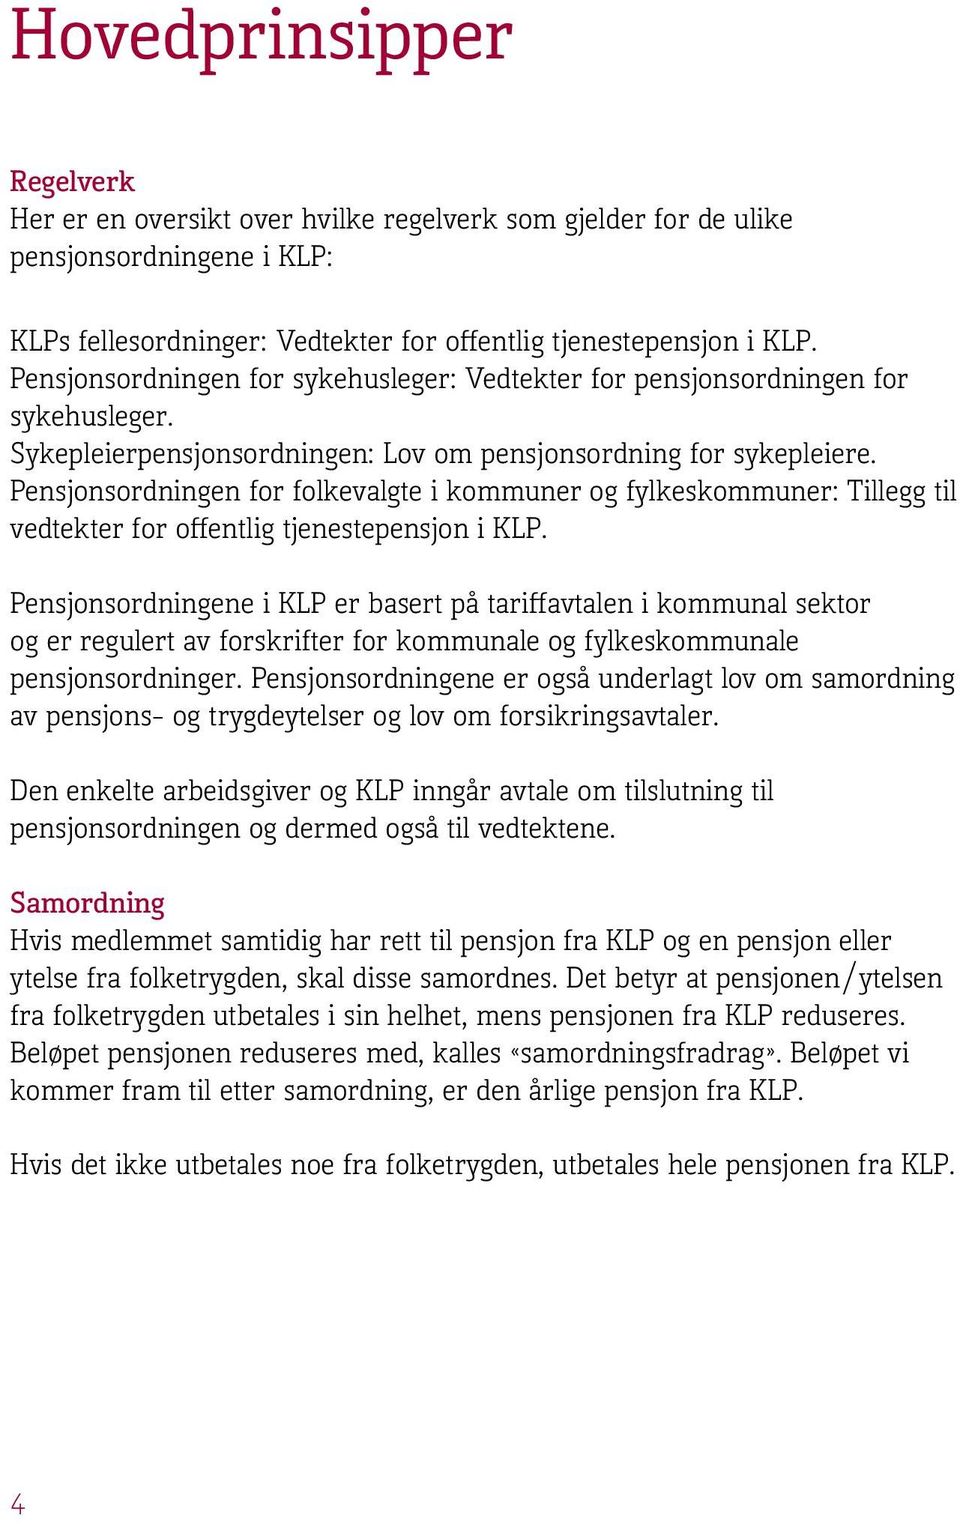 Pensjonsordningen for folkevalgte i kommuner og fylkeskommuner: Tillegg til vedtekter for offentlig tjenestepensjon i KLP.